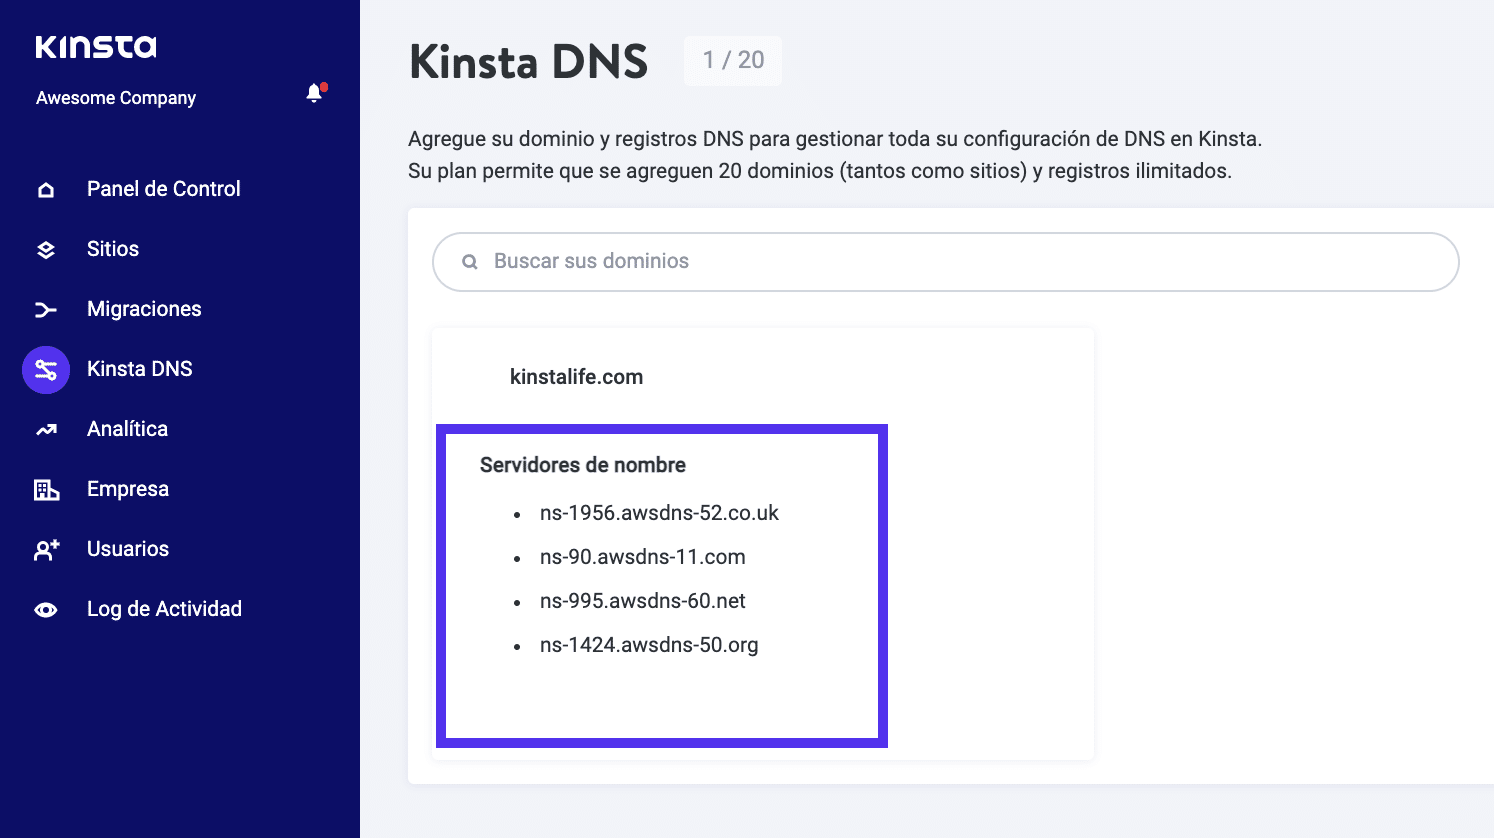 Servidores de nombre del DNS de Kinsta.